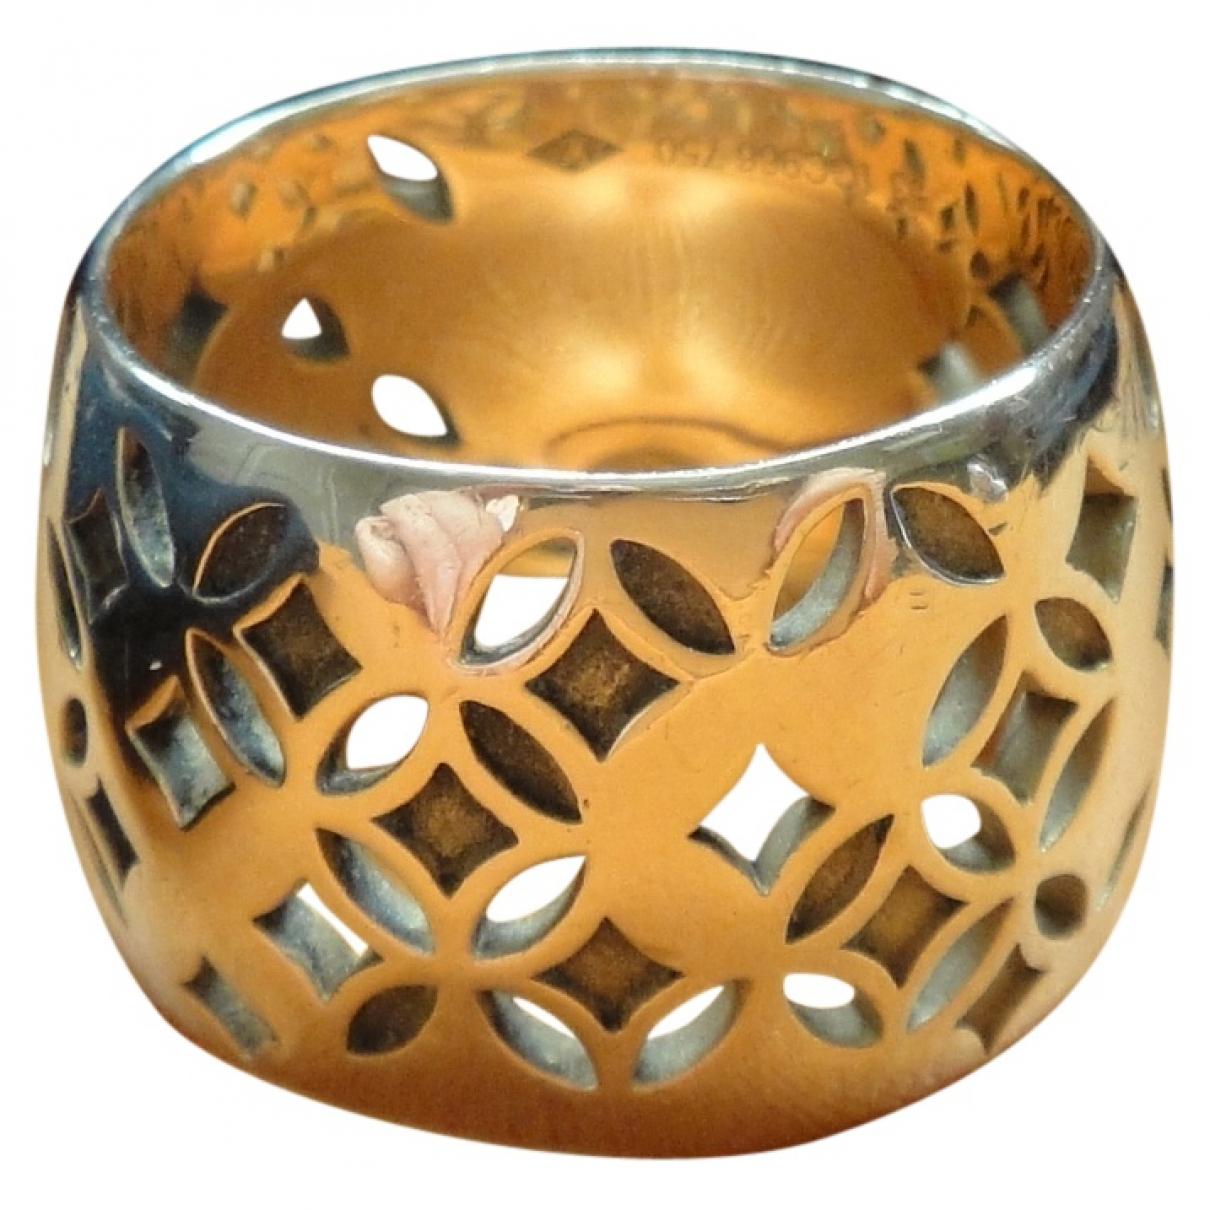 Louis Vuitton Nanogram Ring Gold Metal. Size M